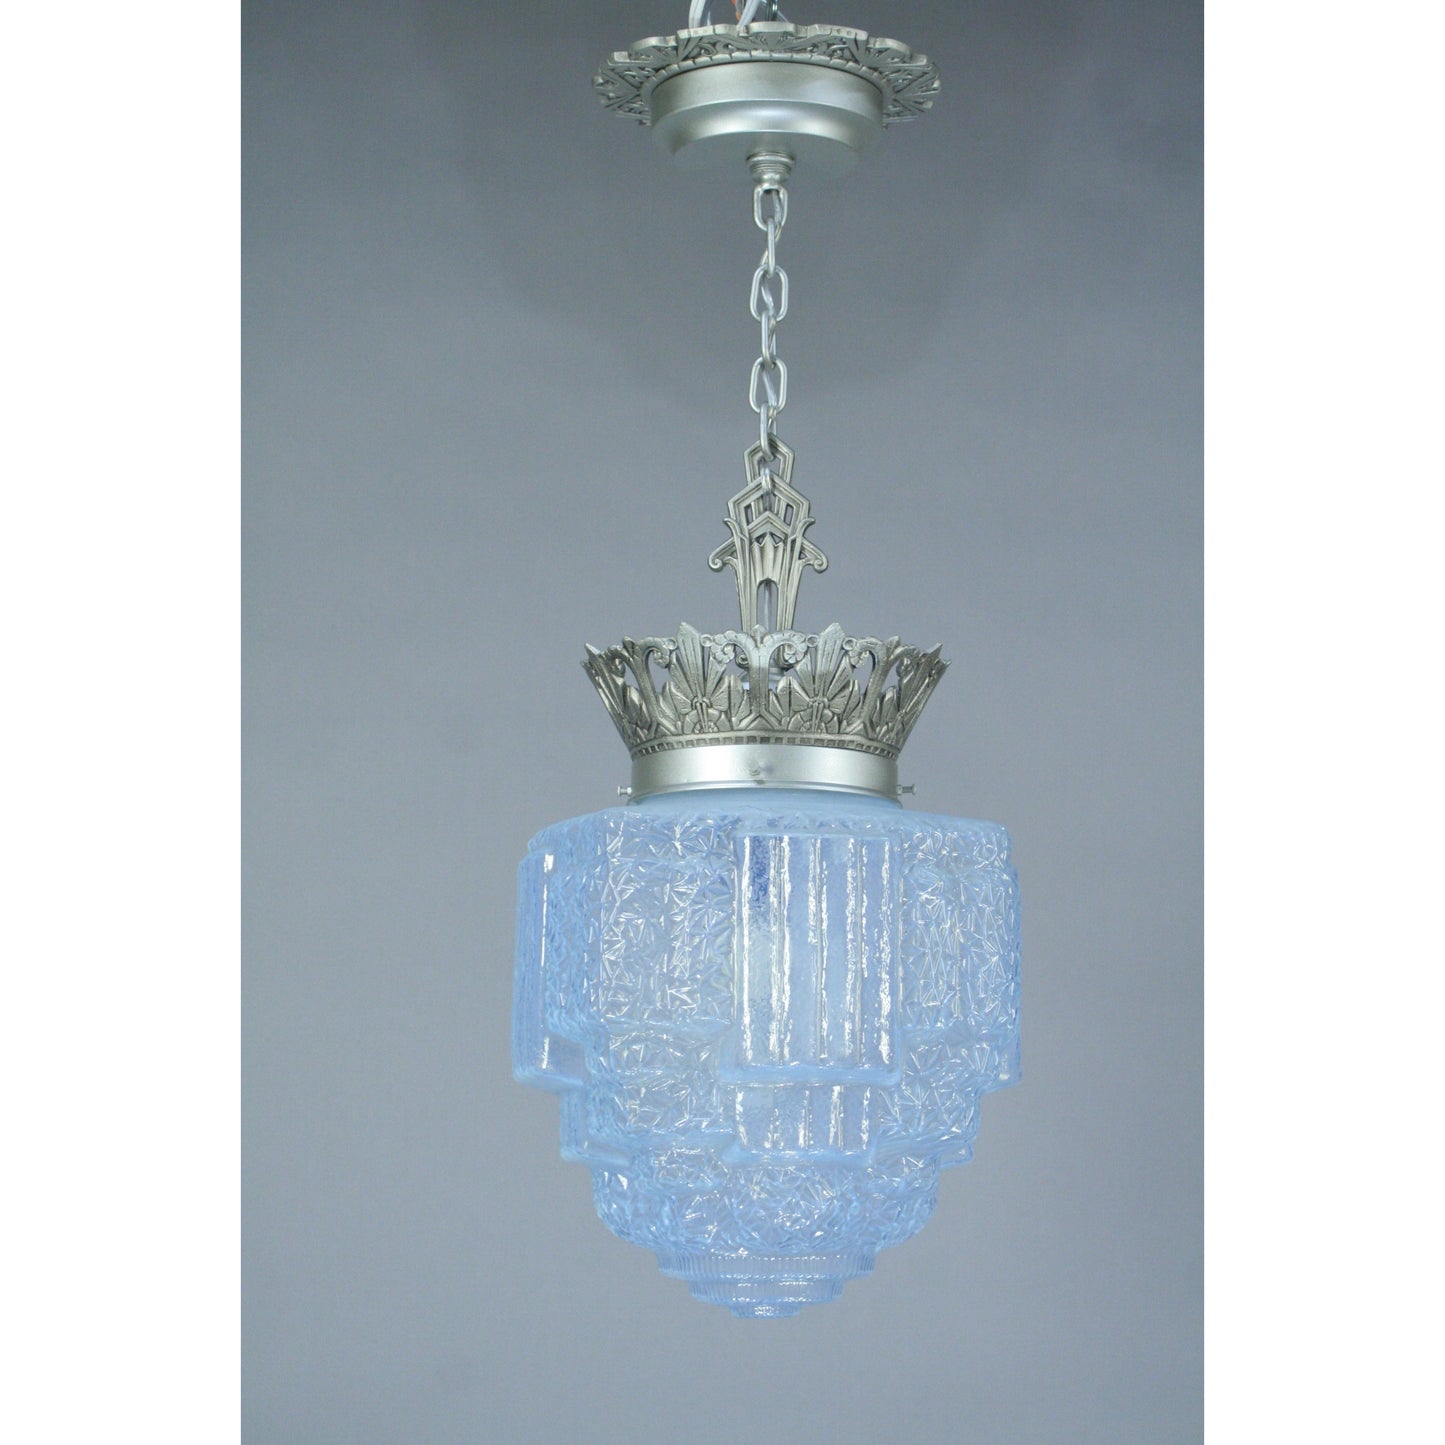 Commercial Art Deco Crown Pendant #2048 - Filament Vintage Lighting